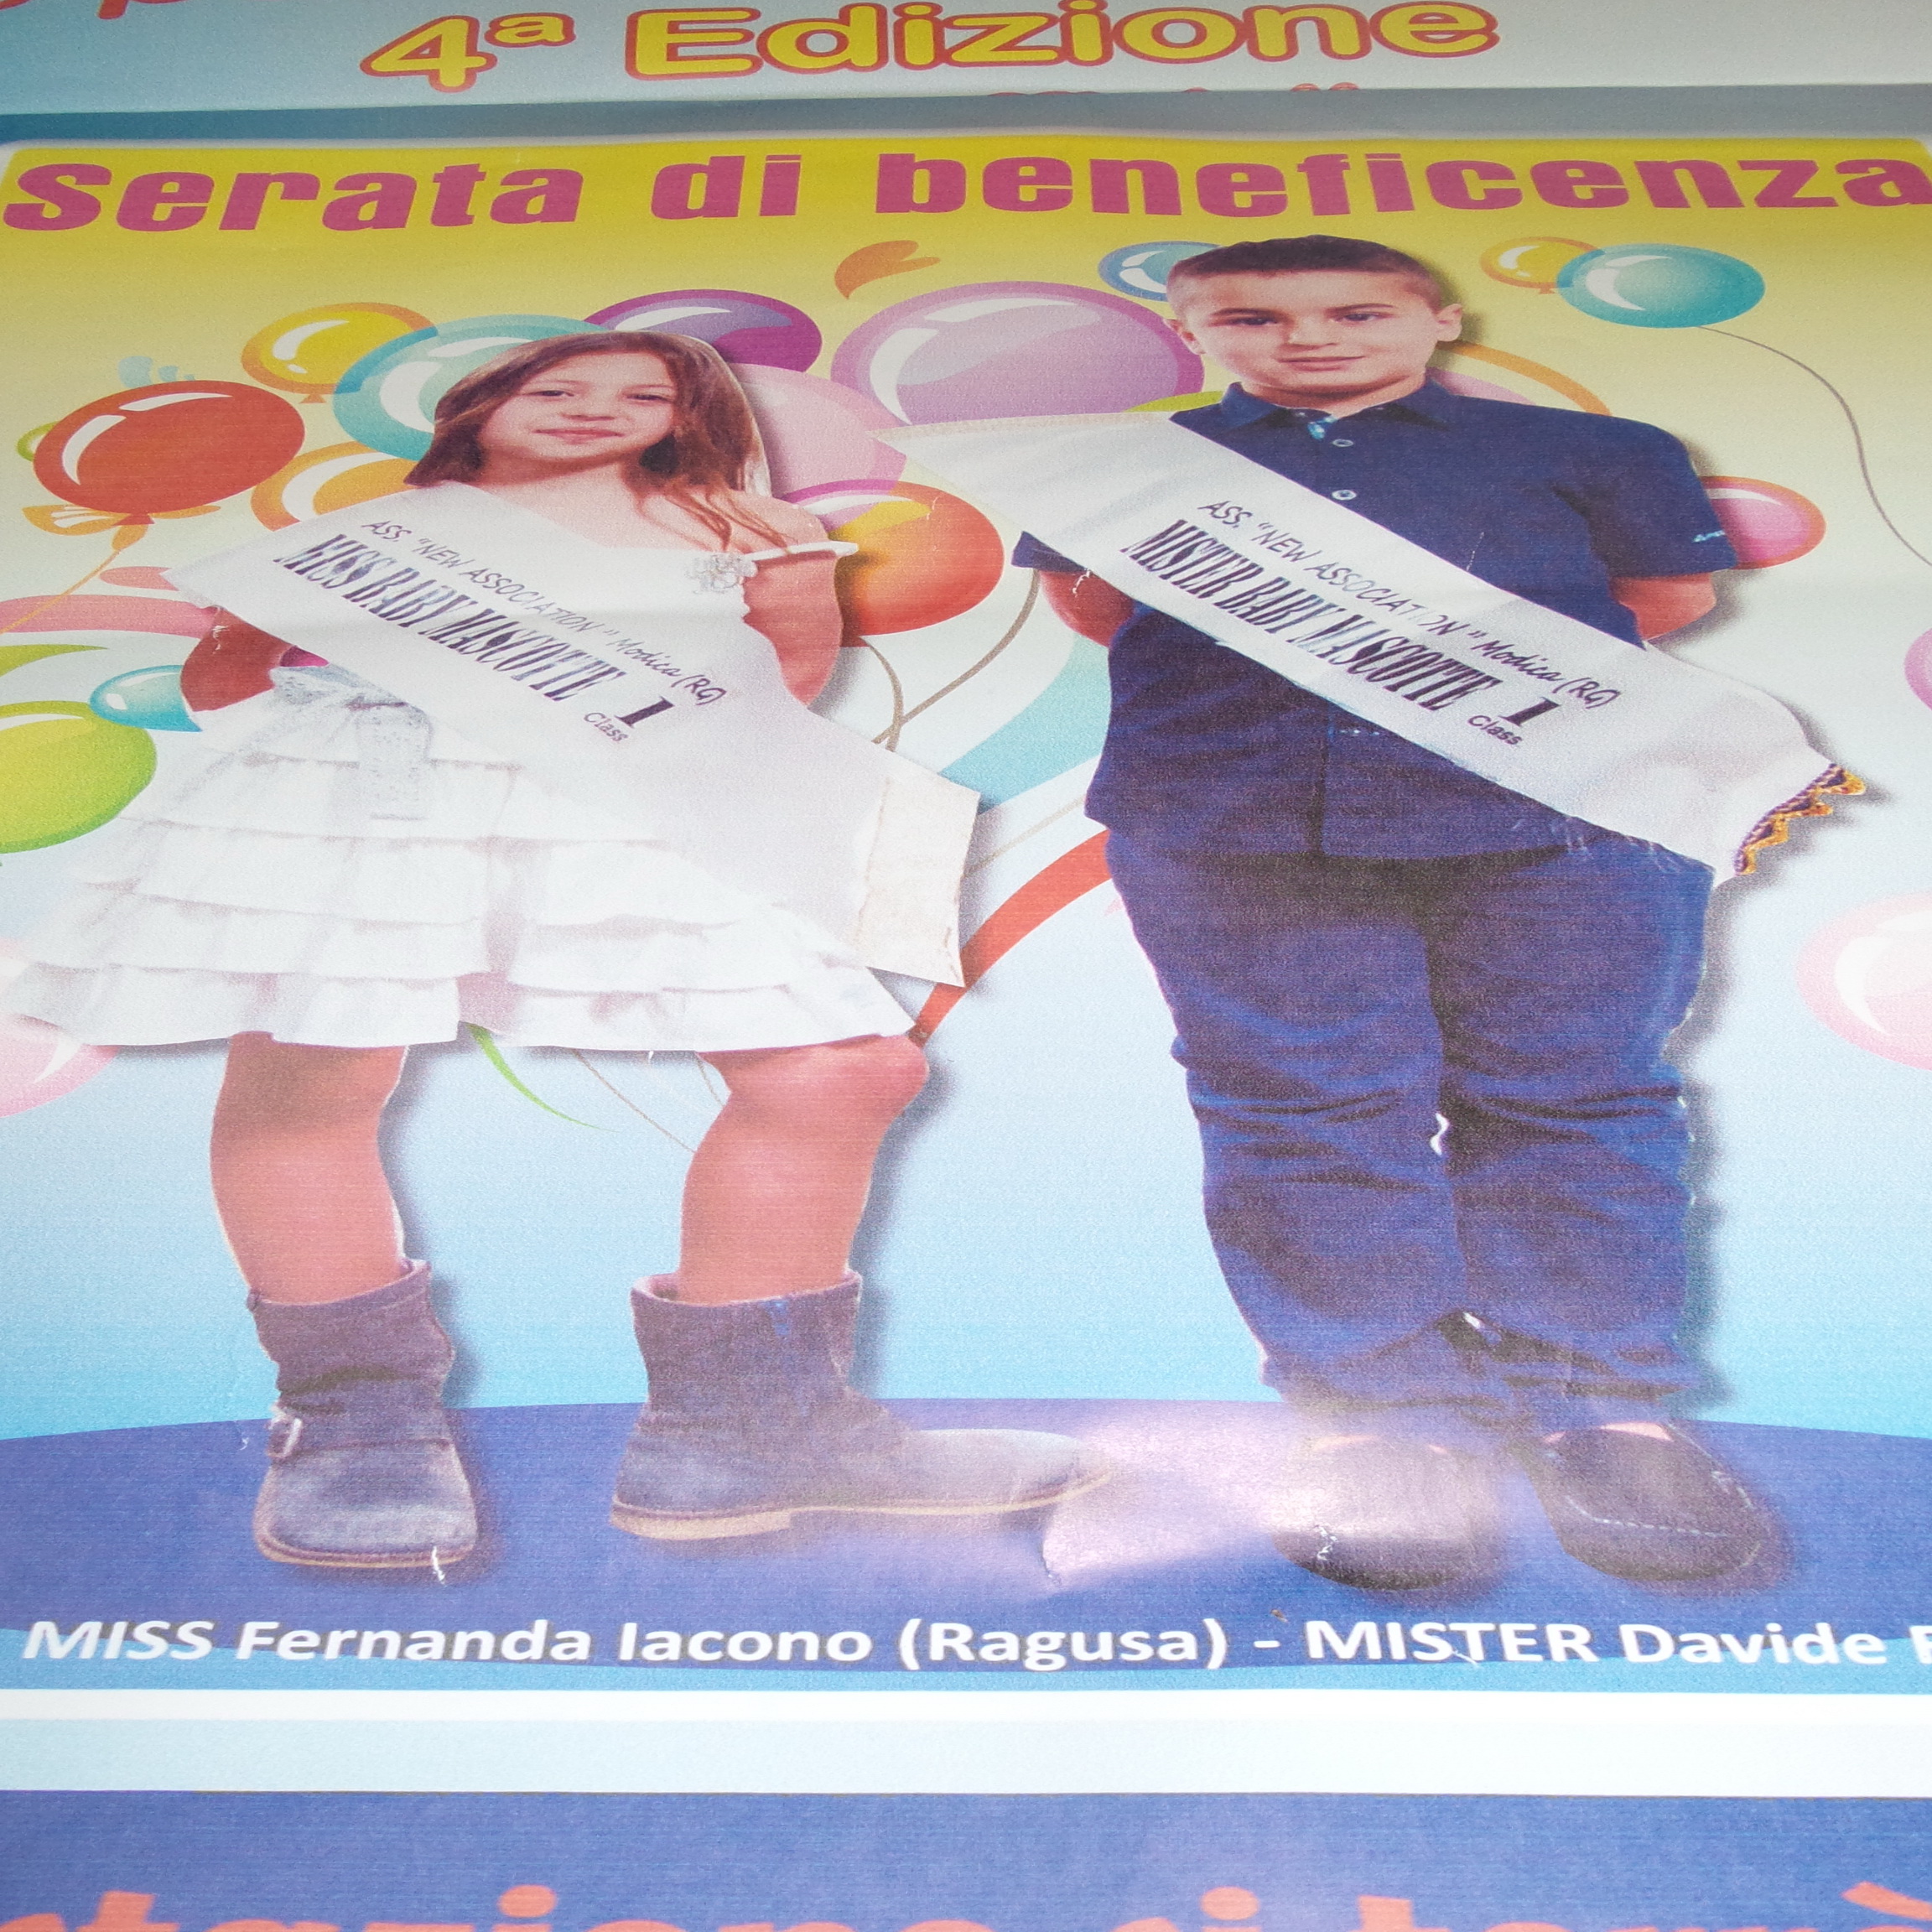  Ecco “Miss e Mister baby mascotte 2014”: lunedì a Modica 4° concorso per i bambini dai 3 ai 10 anni